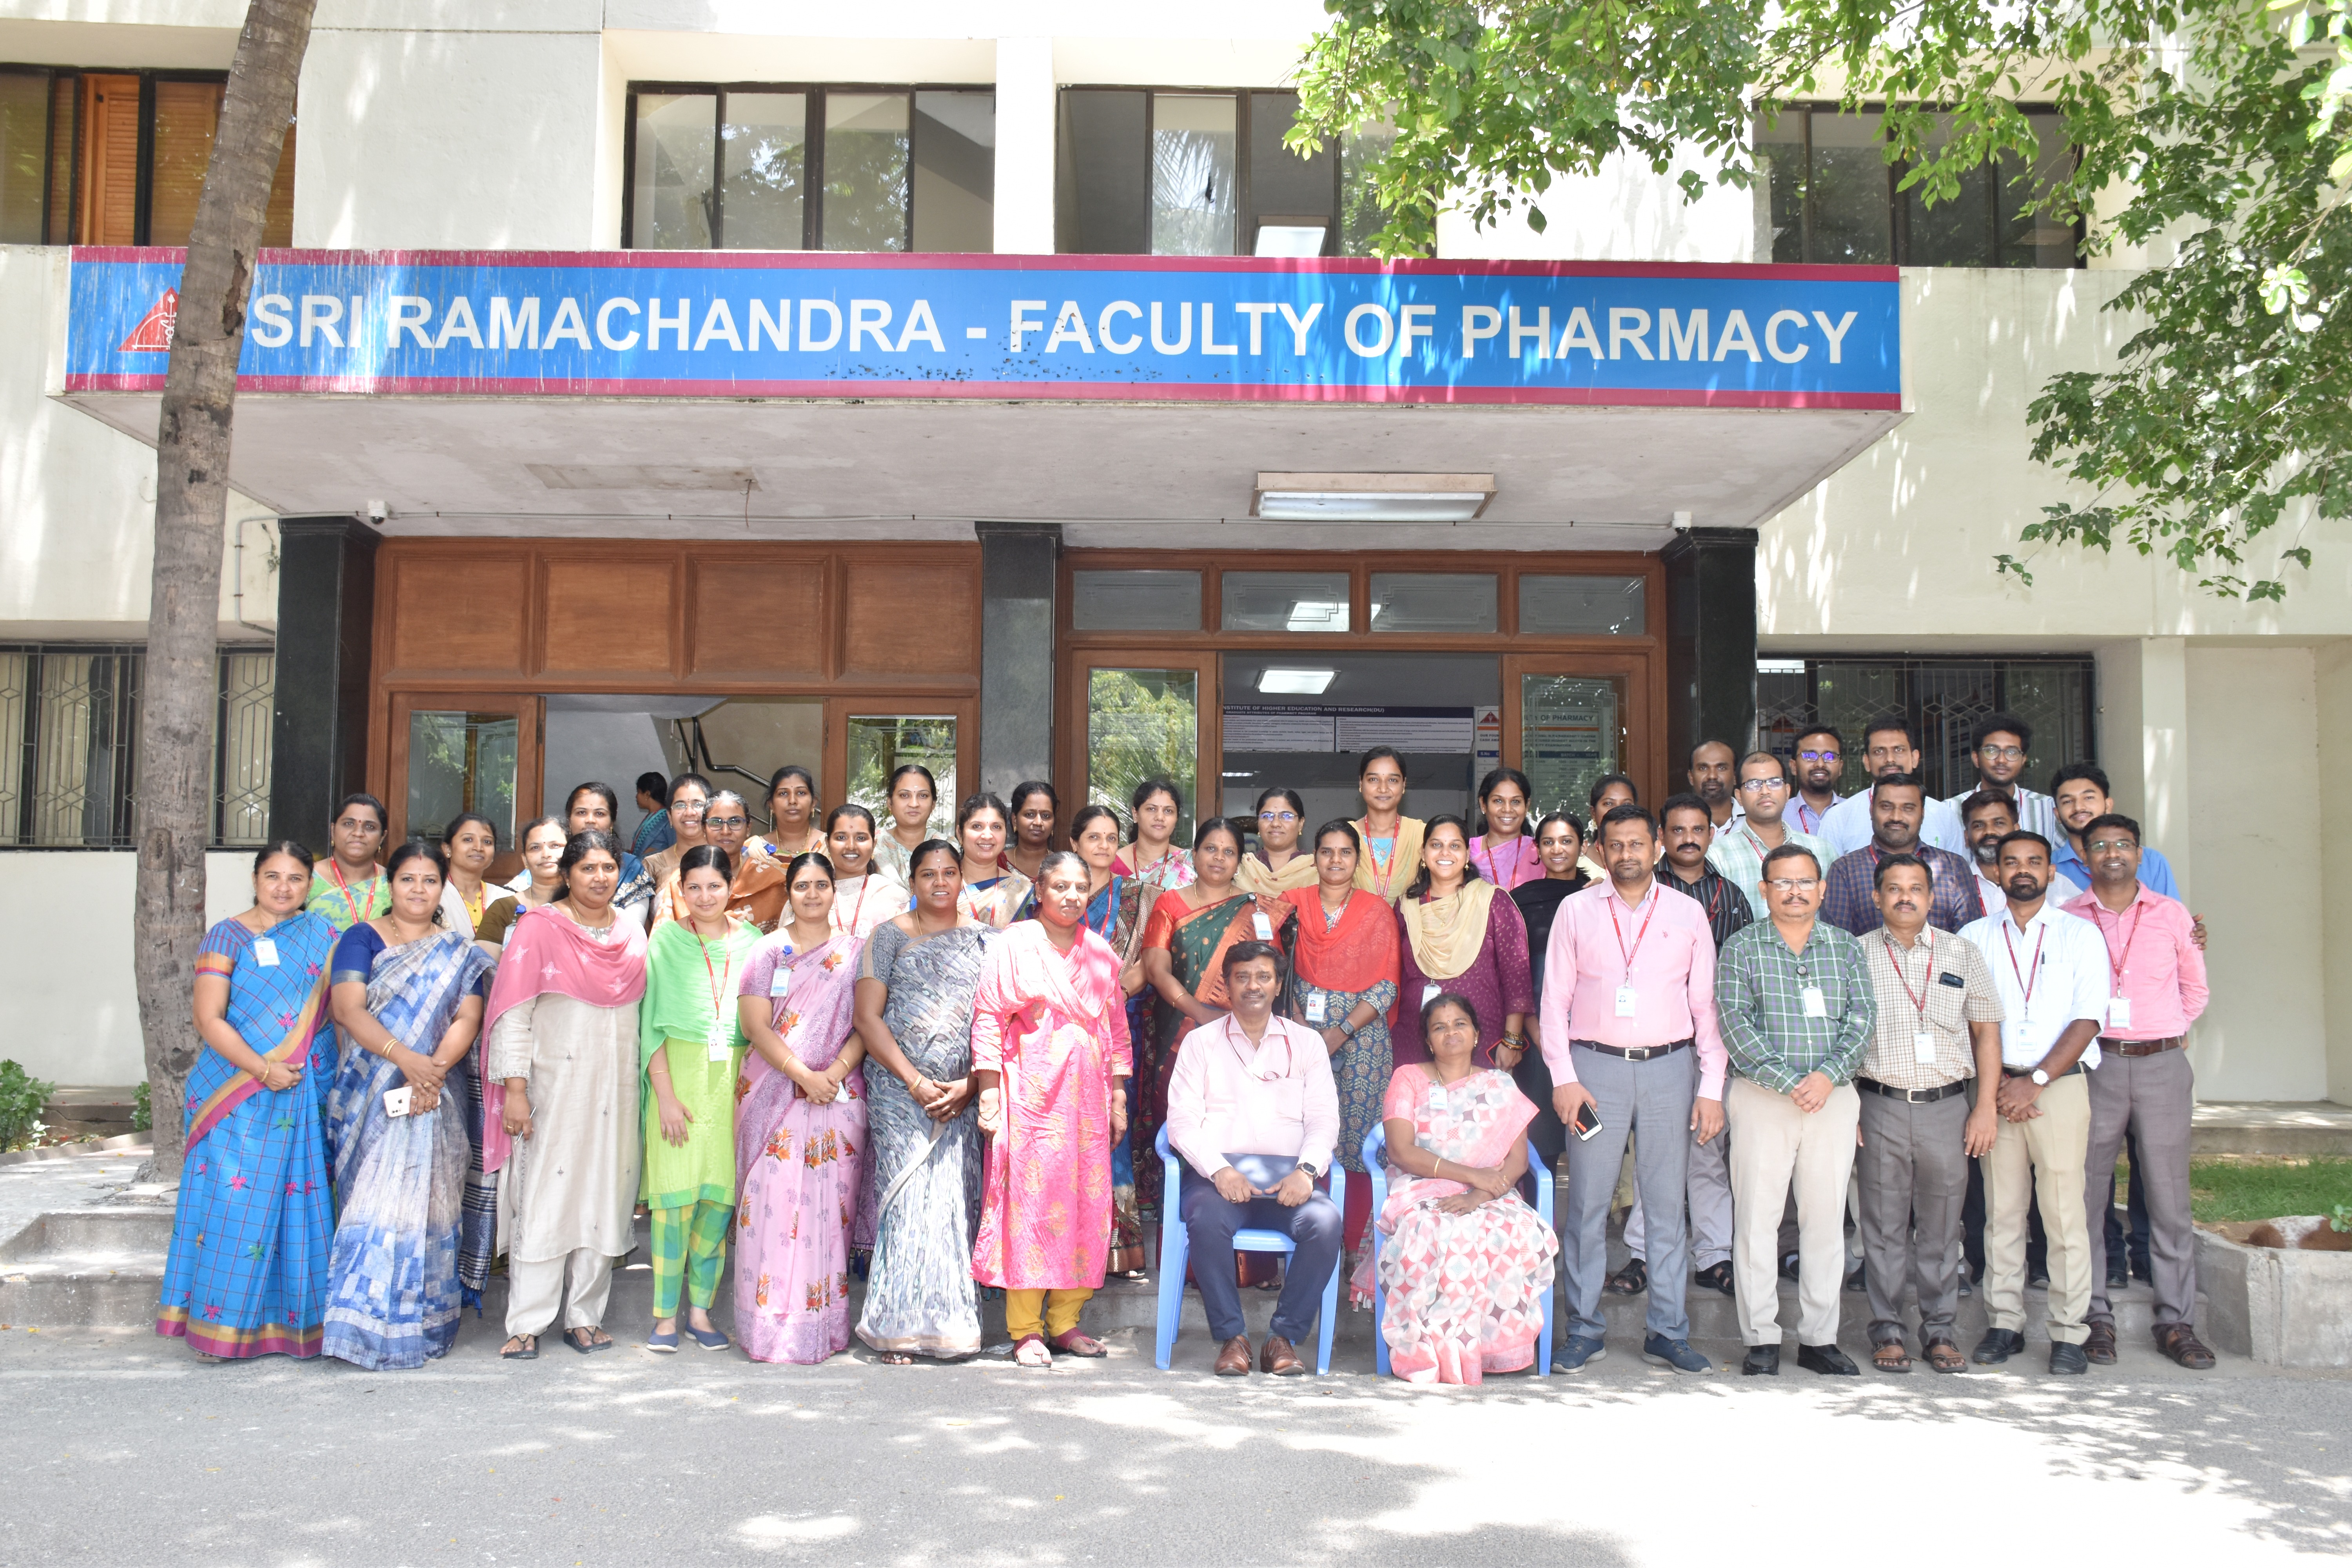 Sri Ramachandra Faculty of Pharmacy